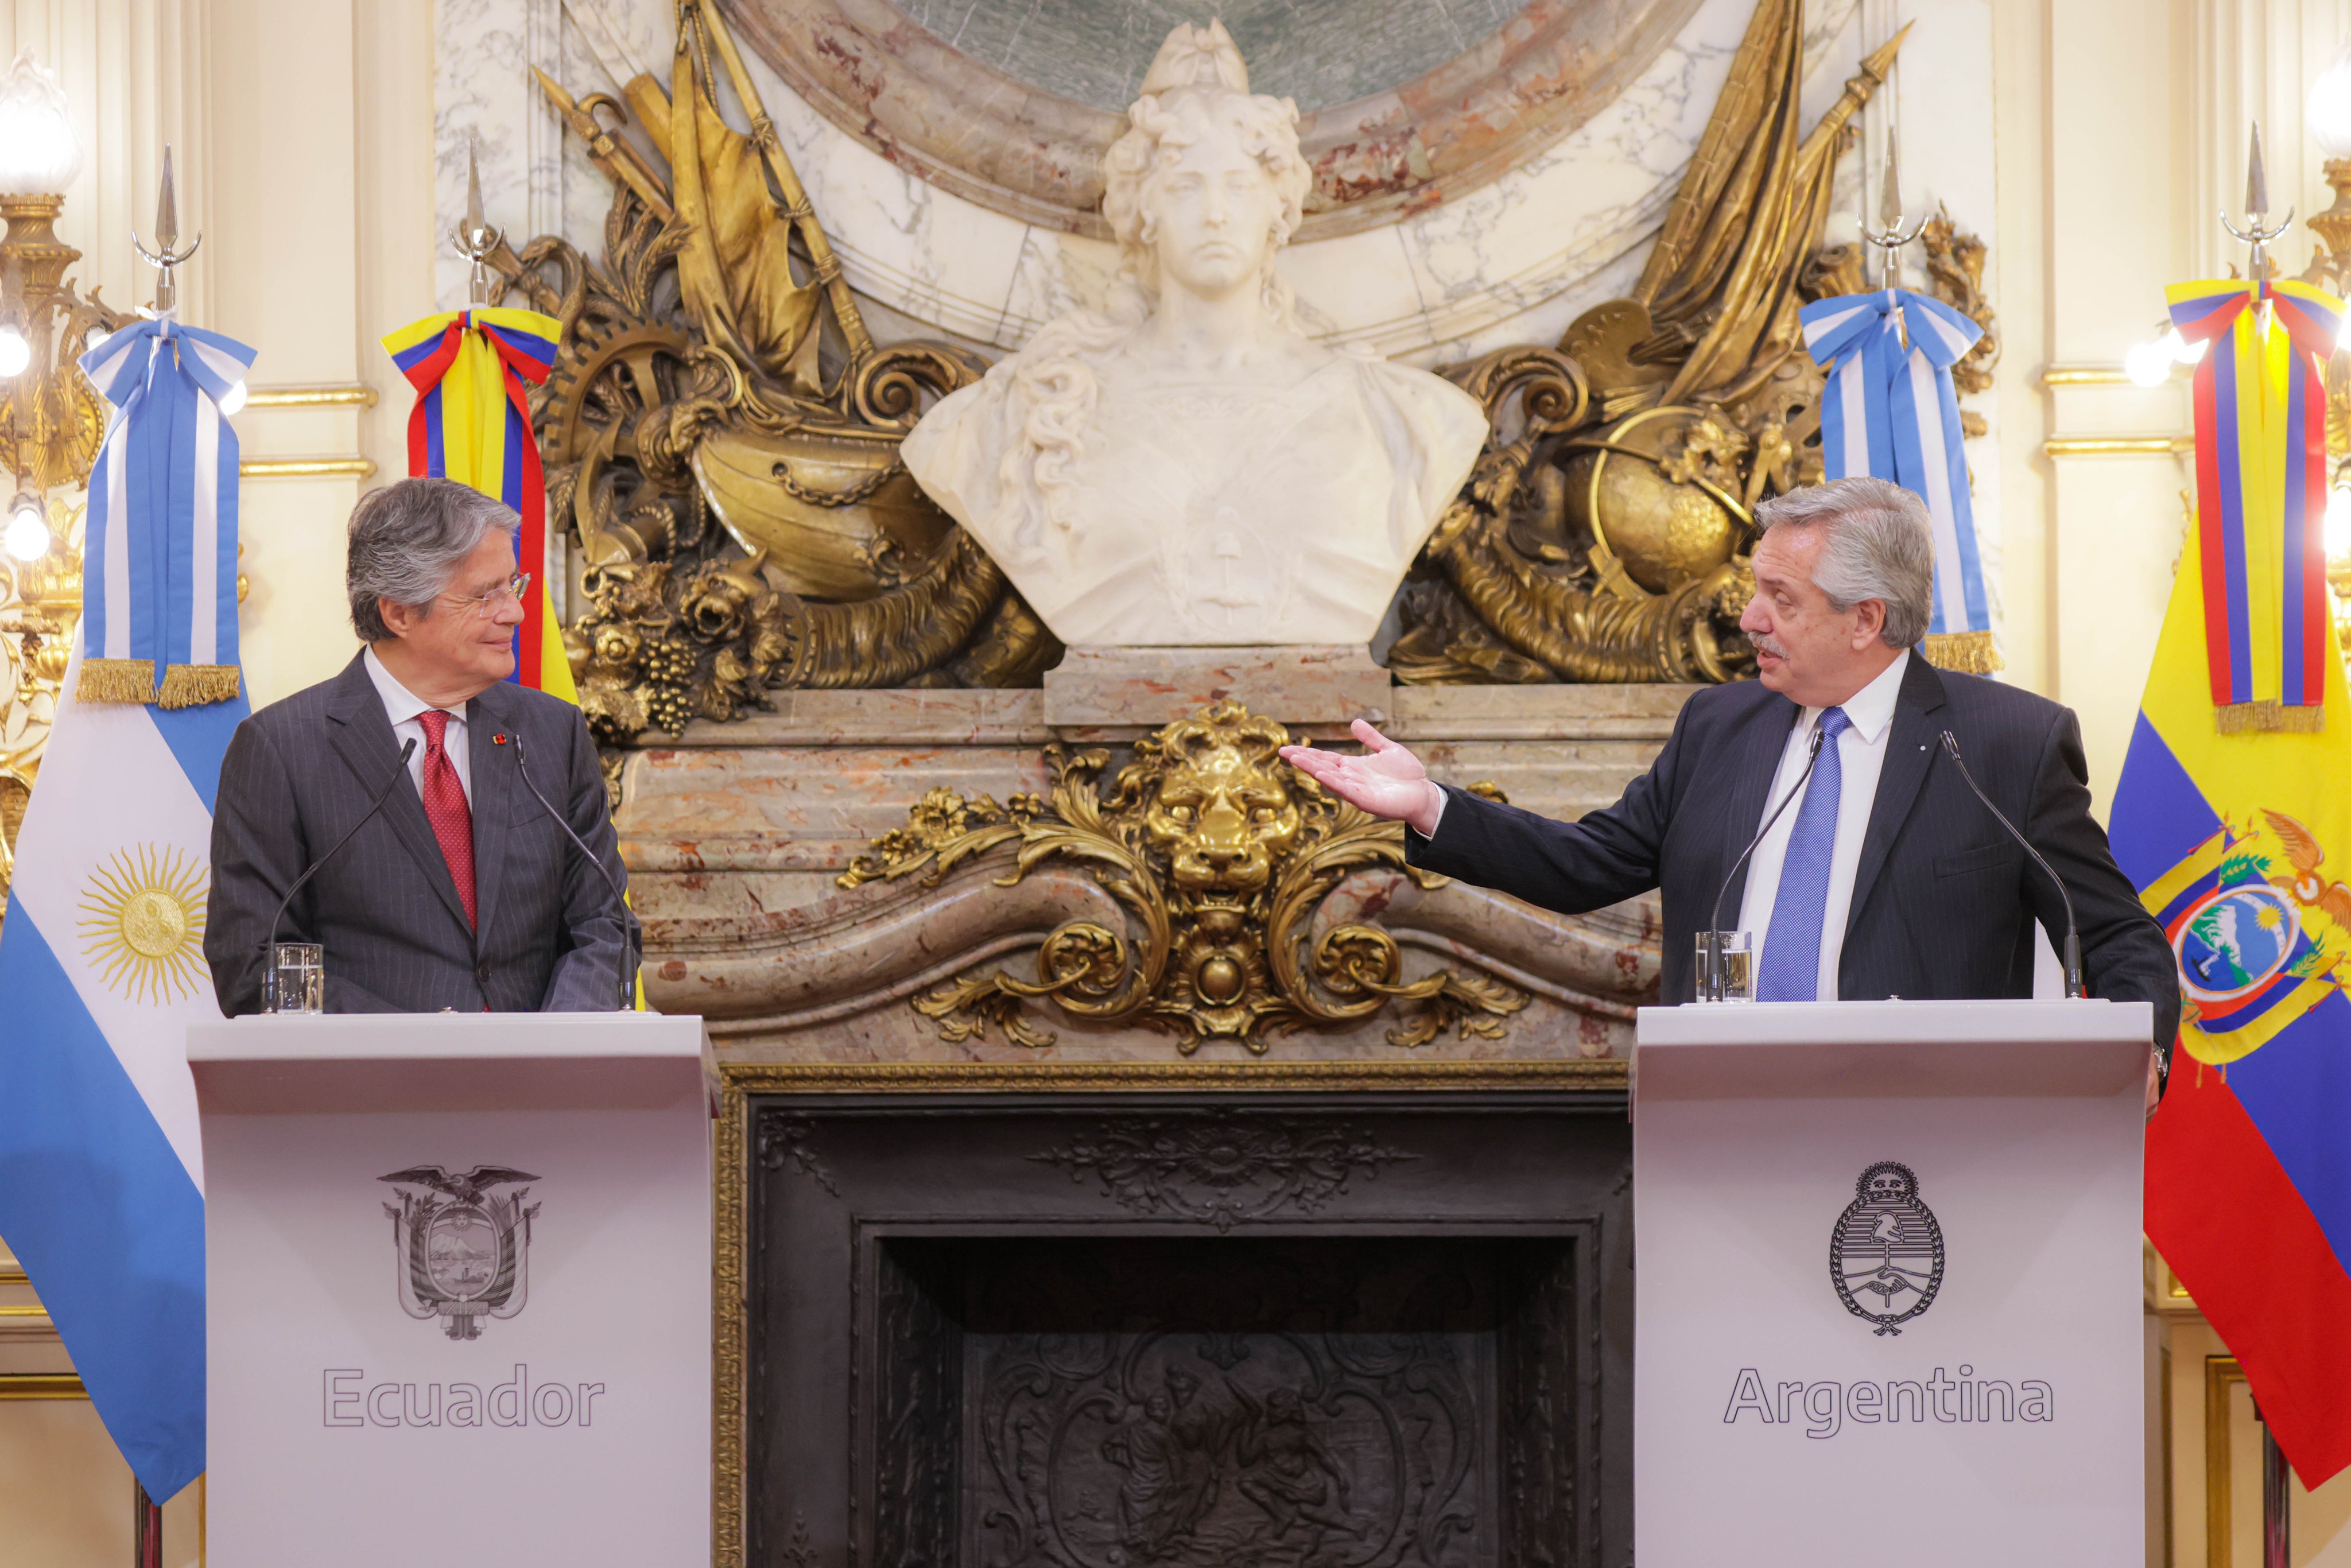 Regreso al futuro: Argentina quiere mejorar las relaciones con Venezuela